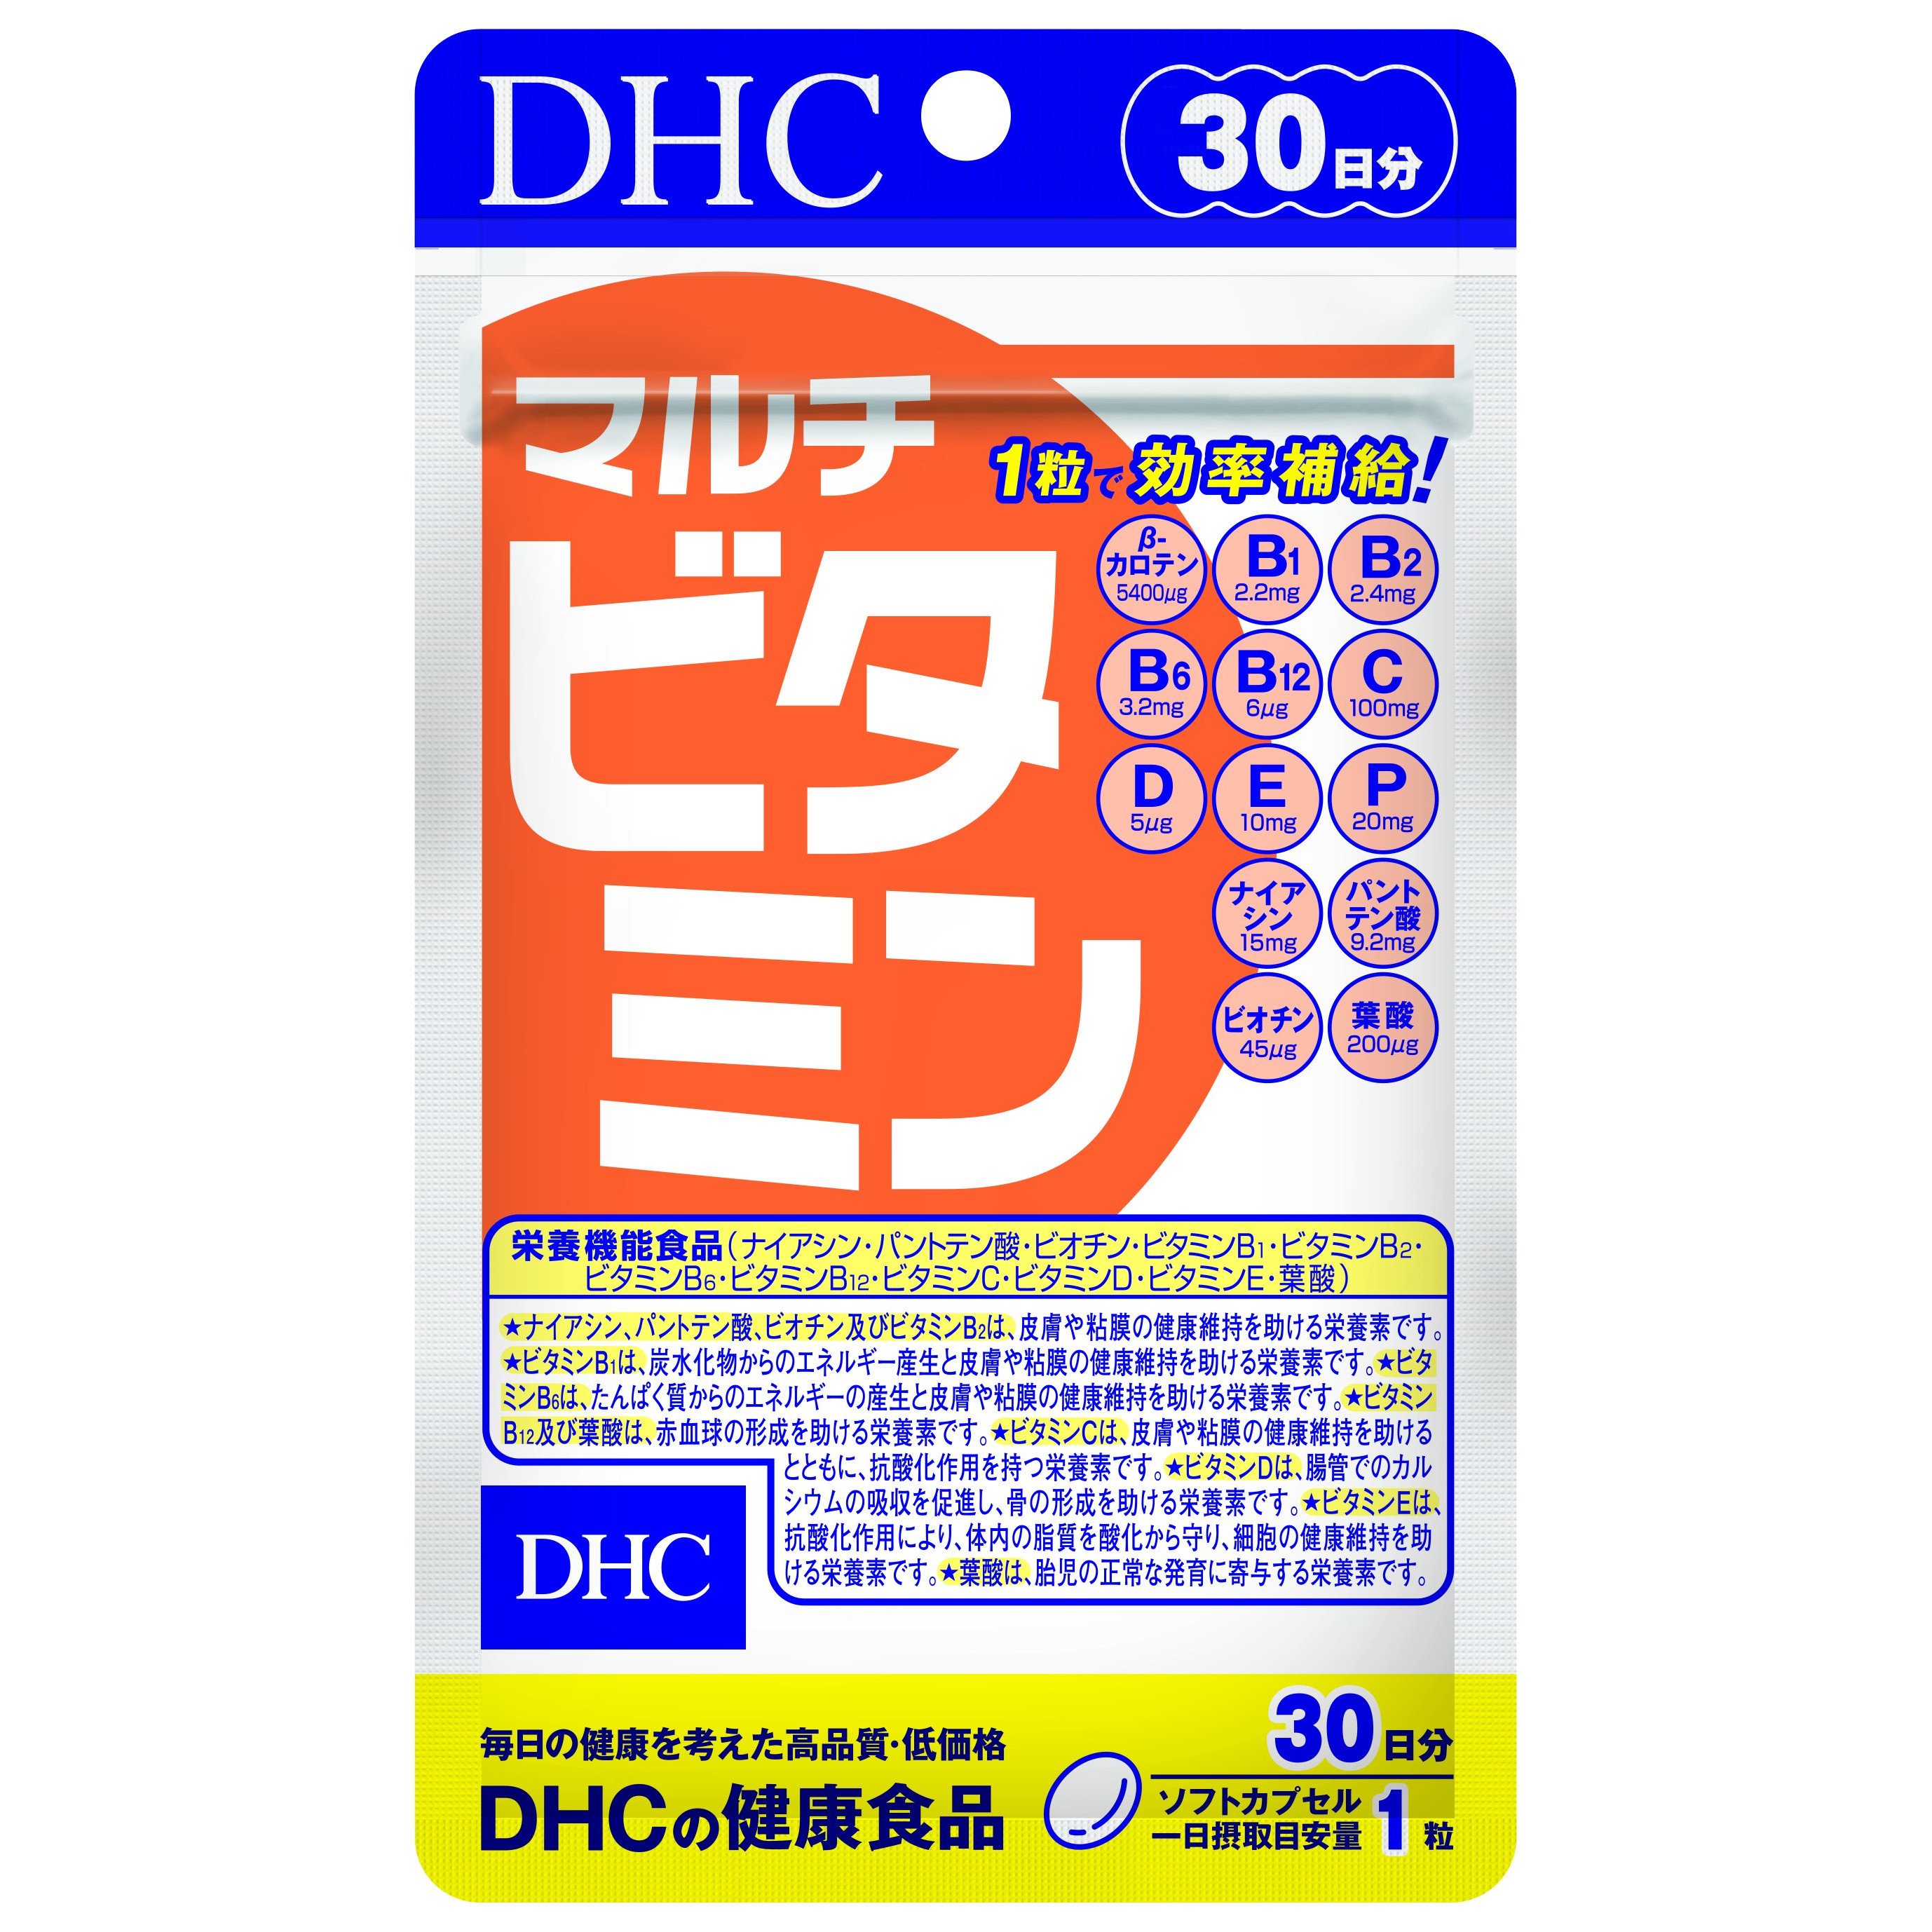 Viên Uống Vitamin Tổng Hợp DHC Multi Vitamin Nhật Bản 30 Ngày ( hàng chính hãng, có tem phụ )